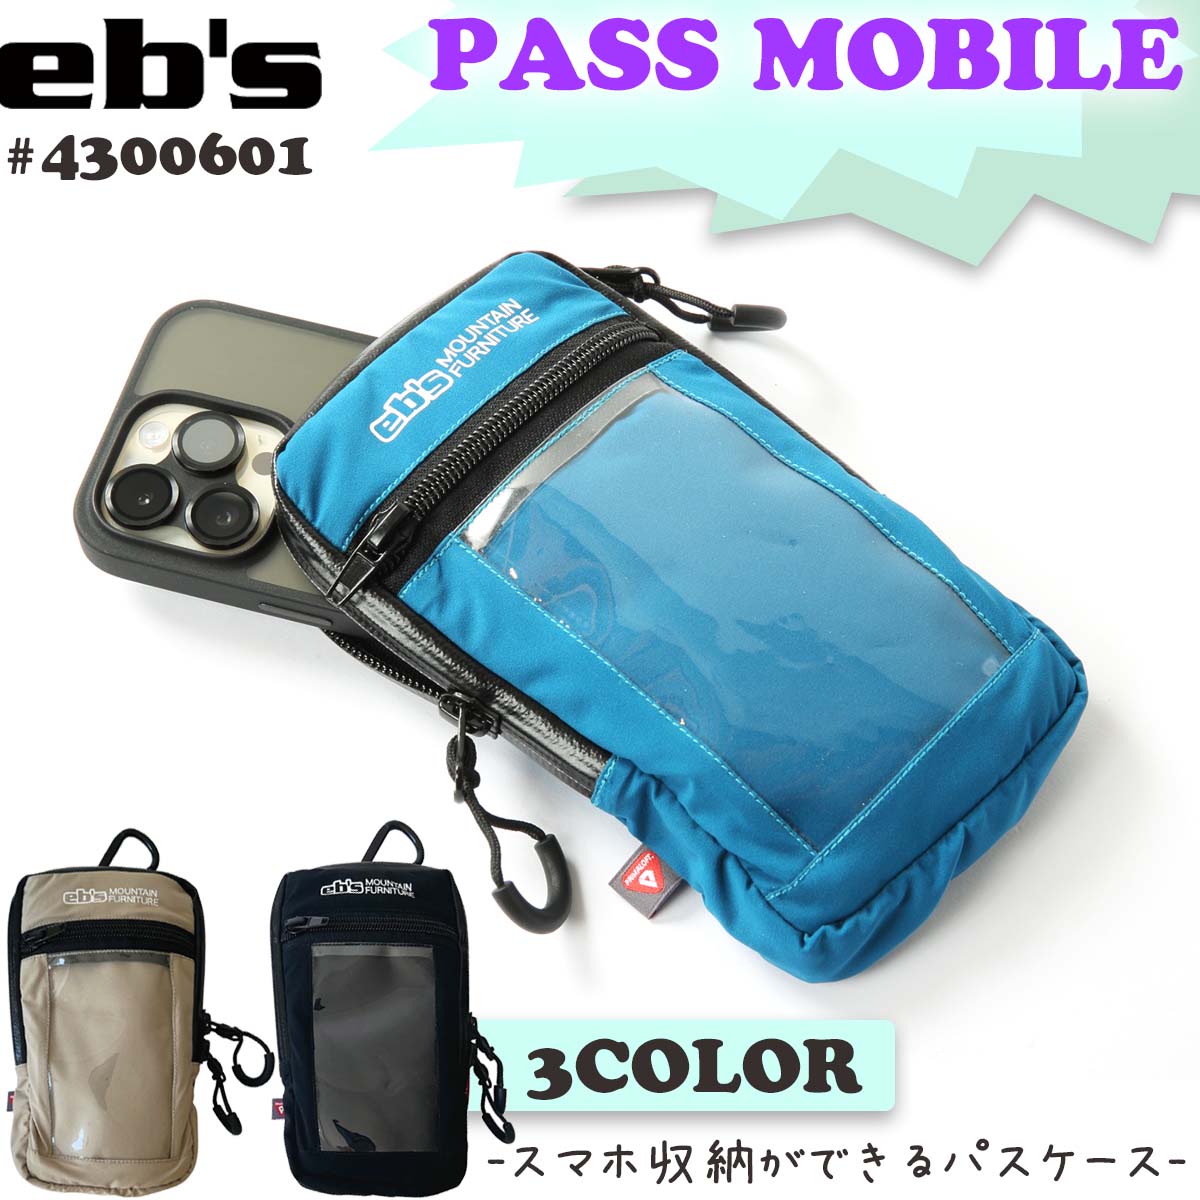 23/24 eb'se винт чехол для пропуска PASS MOBILE подъёмник талон смартфон мобильный лыжи унисекс #4300601 Япония стандартный товар 